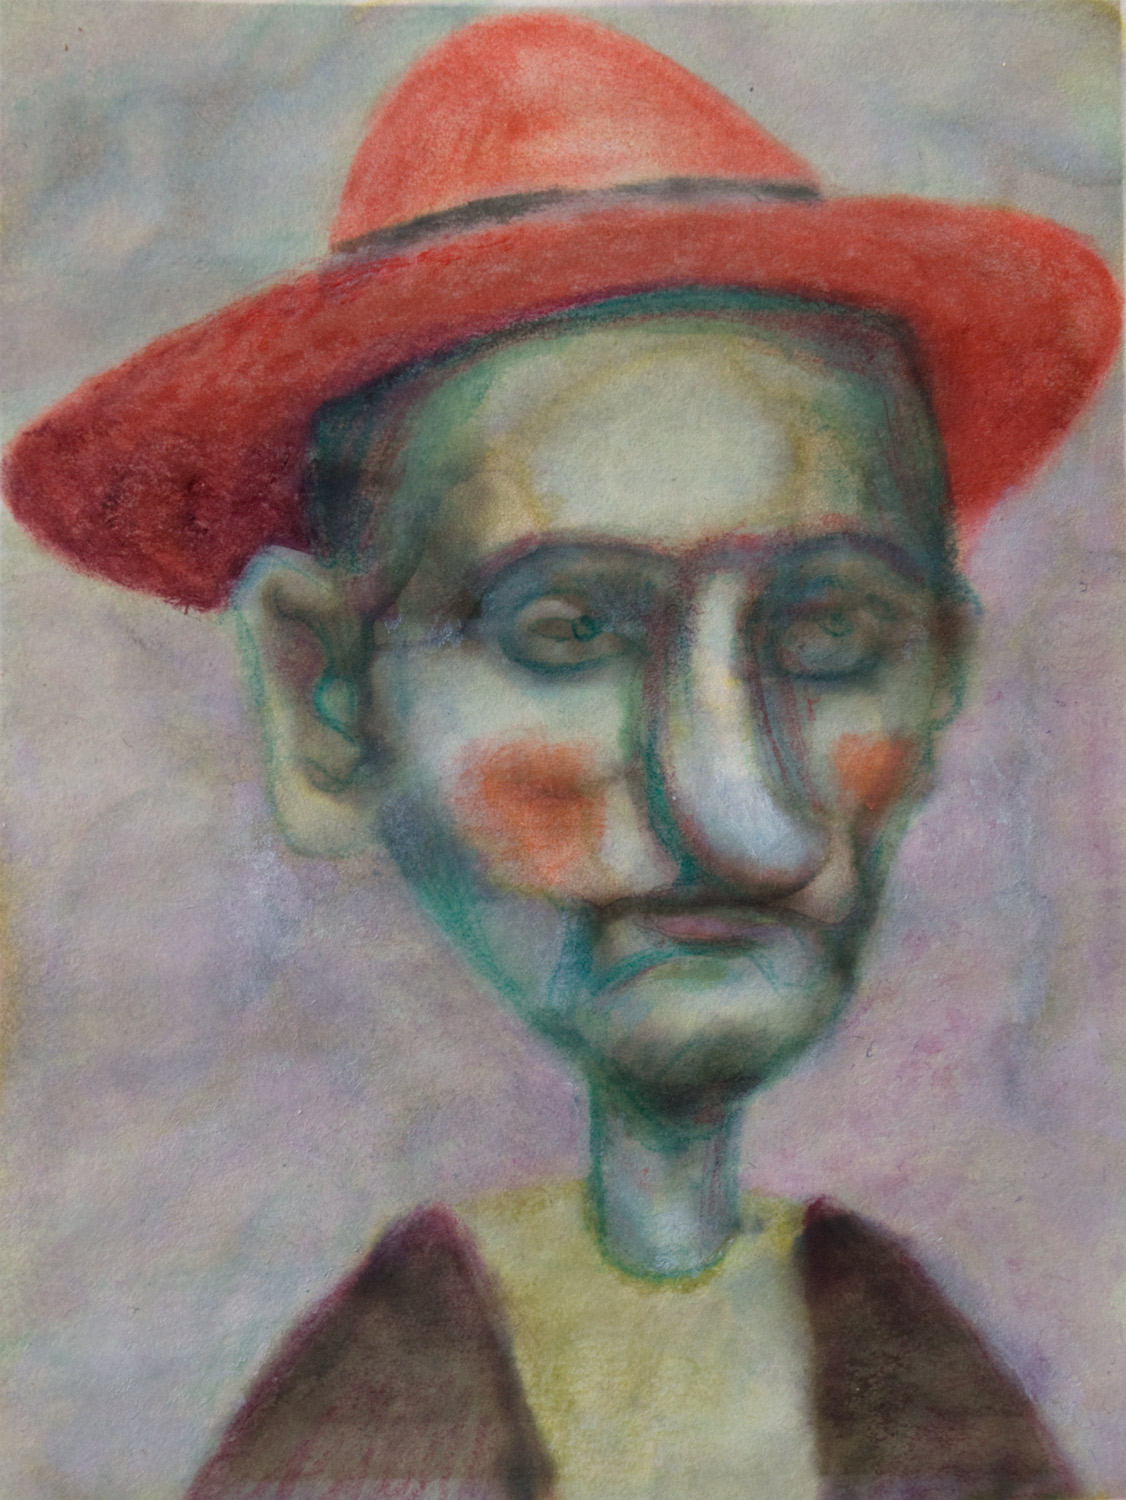 Portrait von Pinocchio 10, 14.5cm x 11.5cm, Tinte und Ölfarbe auf Papier